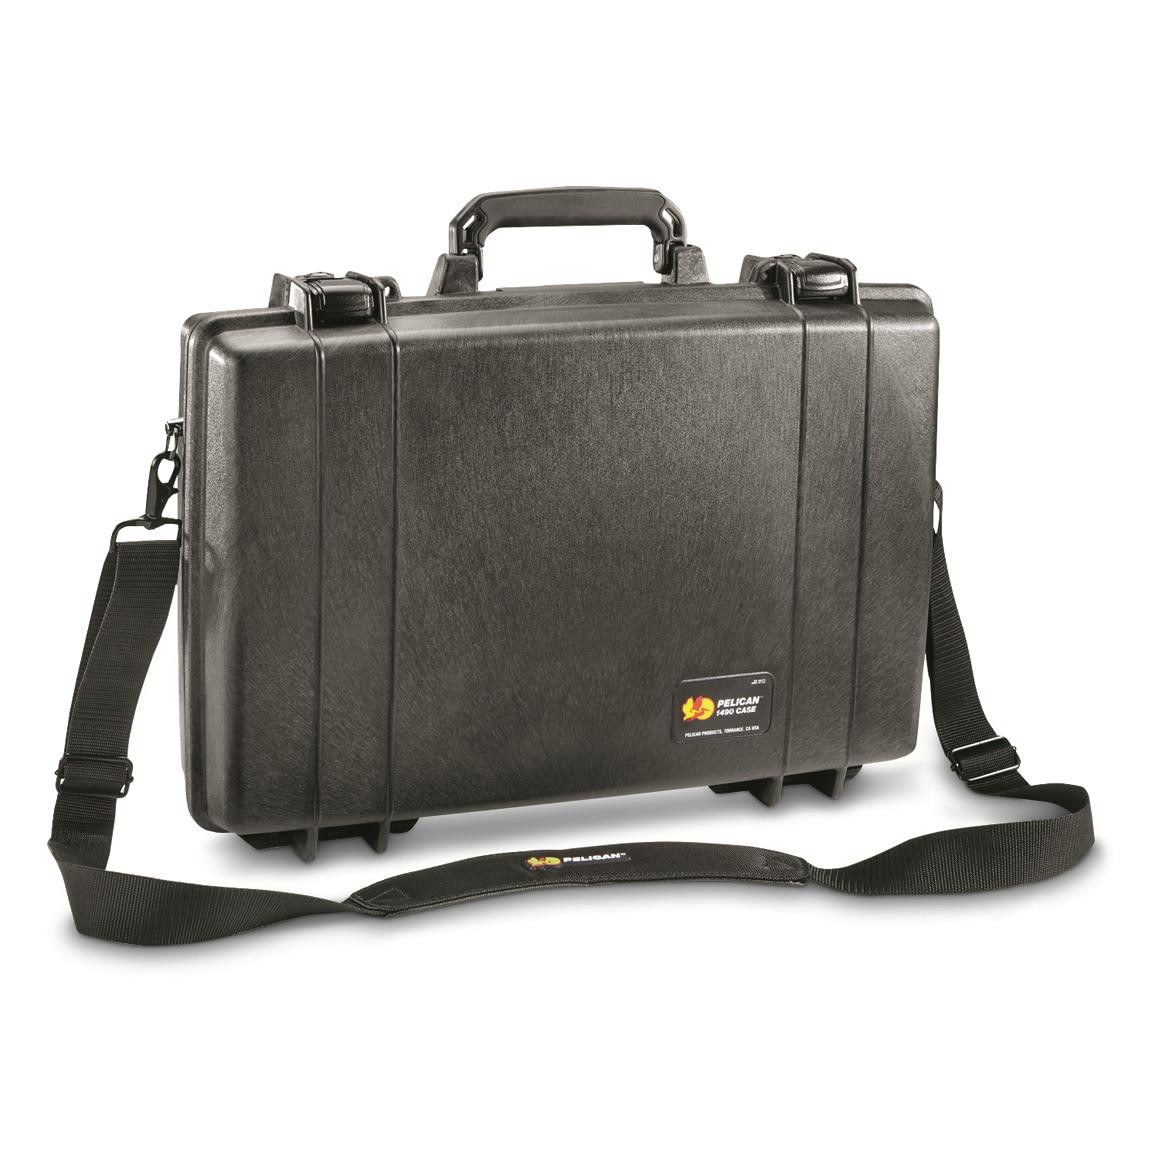 U.S. Military Surplus Waterproof Pelican 1490 Protector Laptop Case, New